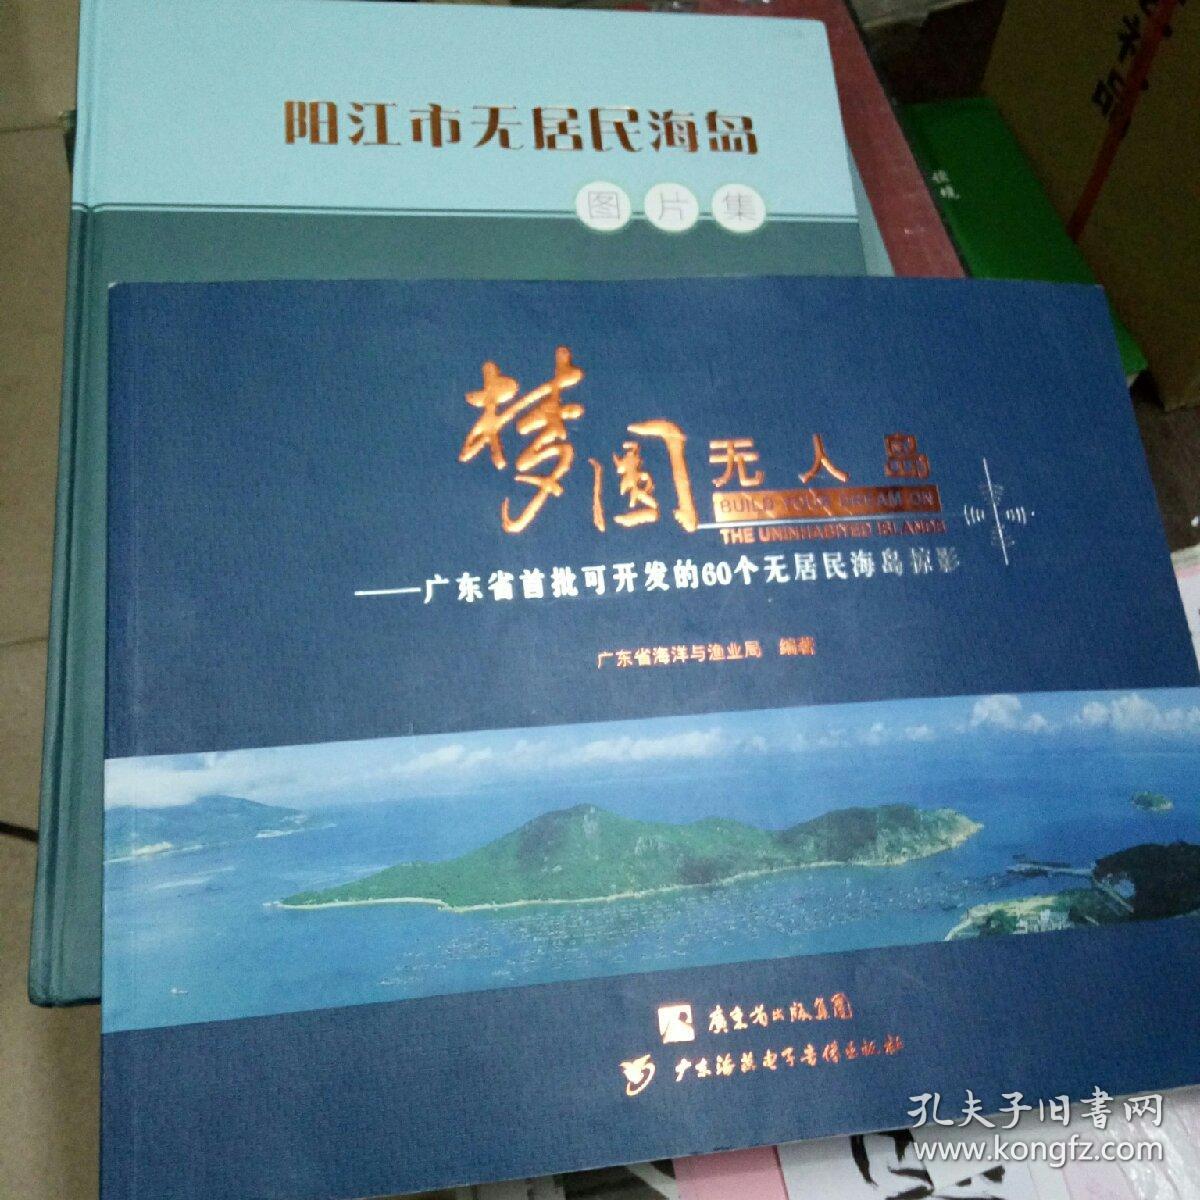 《阳江市无居民海岛图片集》《梦圆无人岛，广东省首批可开发的60个无居民海岛掠影》两册合售